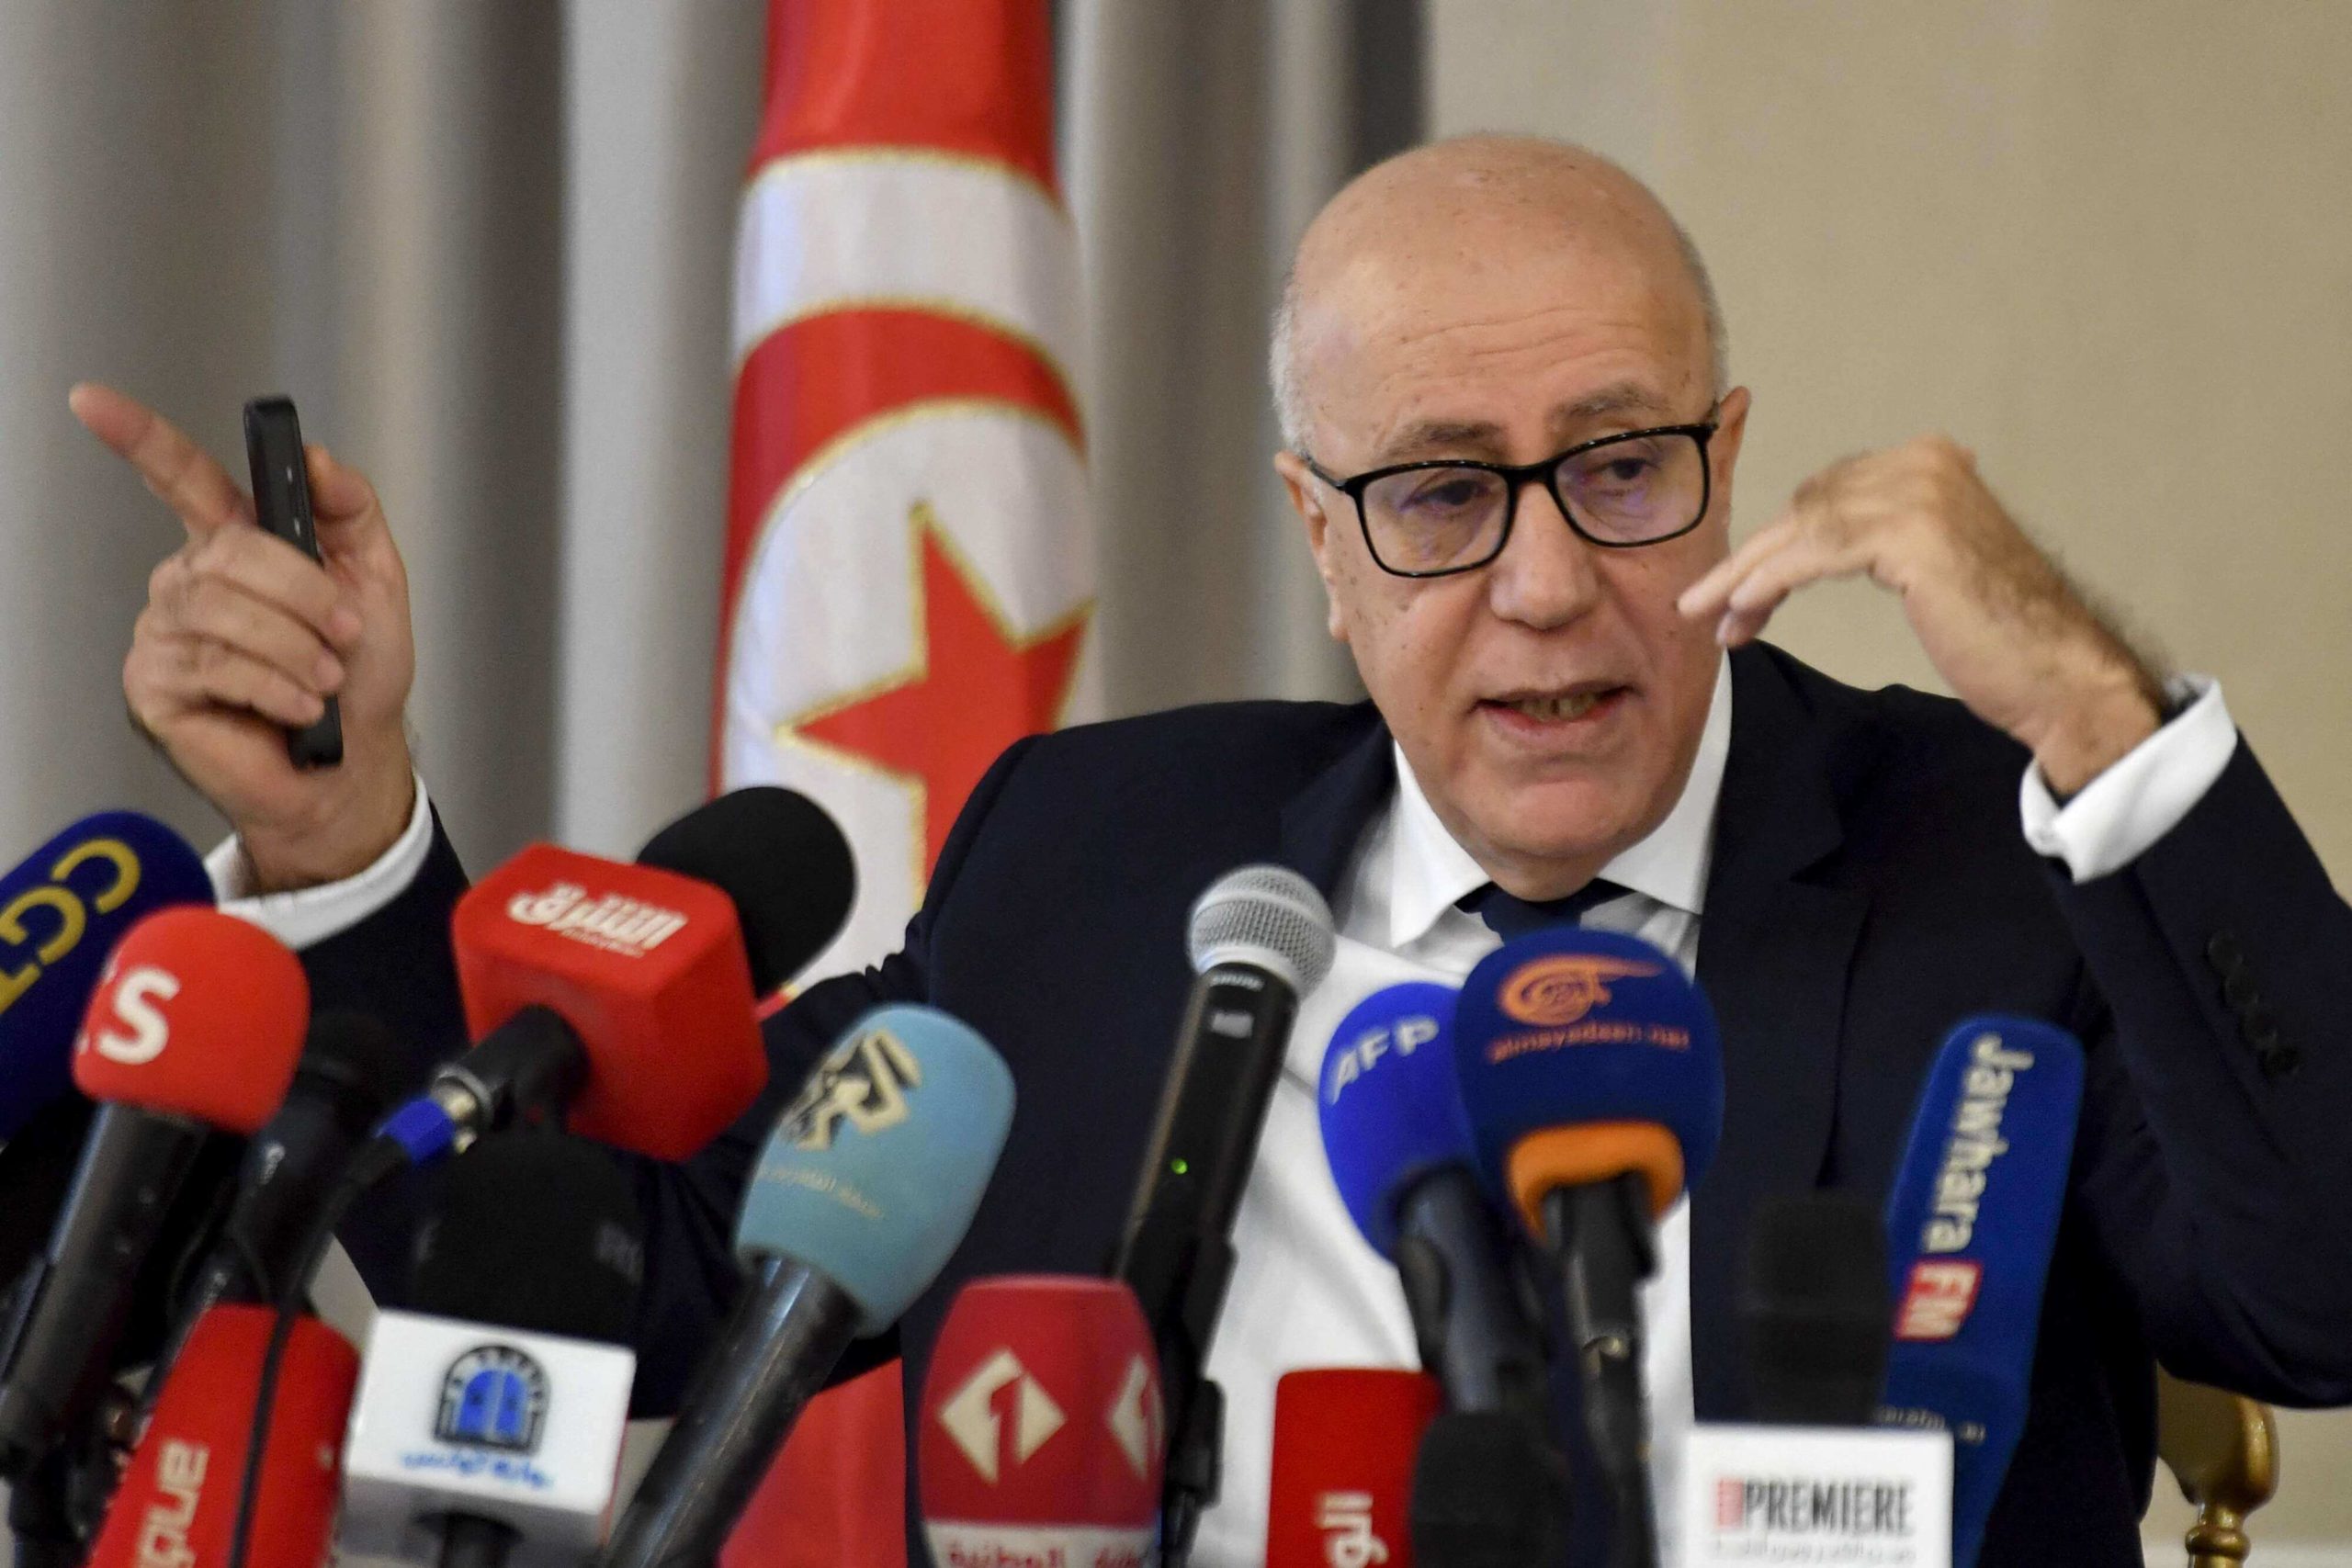  العباسي: تونس تعمل مع صندوق النقد الدولي على برنامج إصلاح اقتصادي عادل...